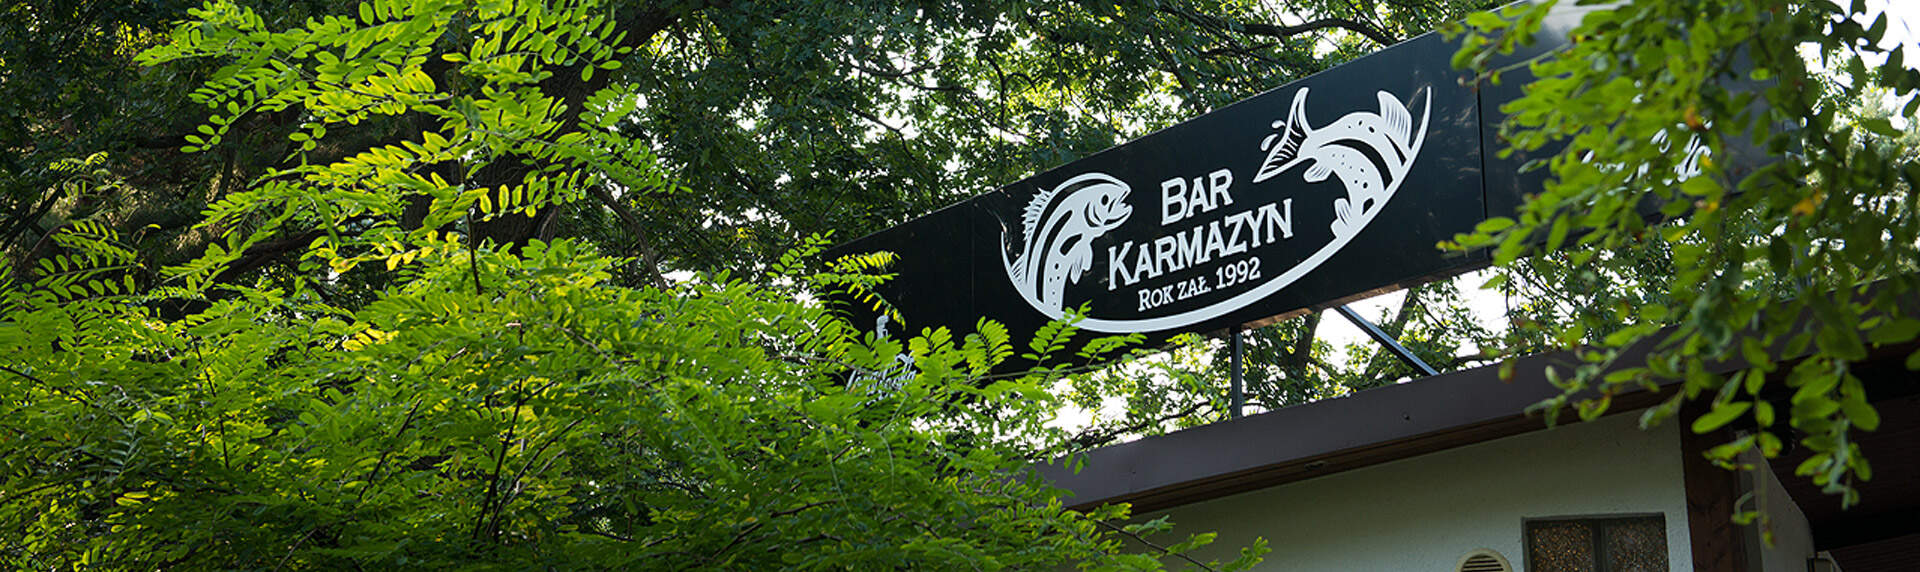 Bar Karmazyn - Galeria